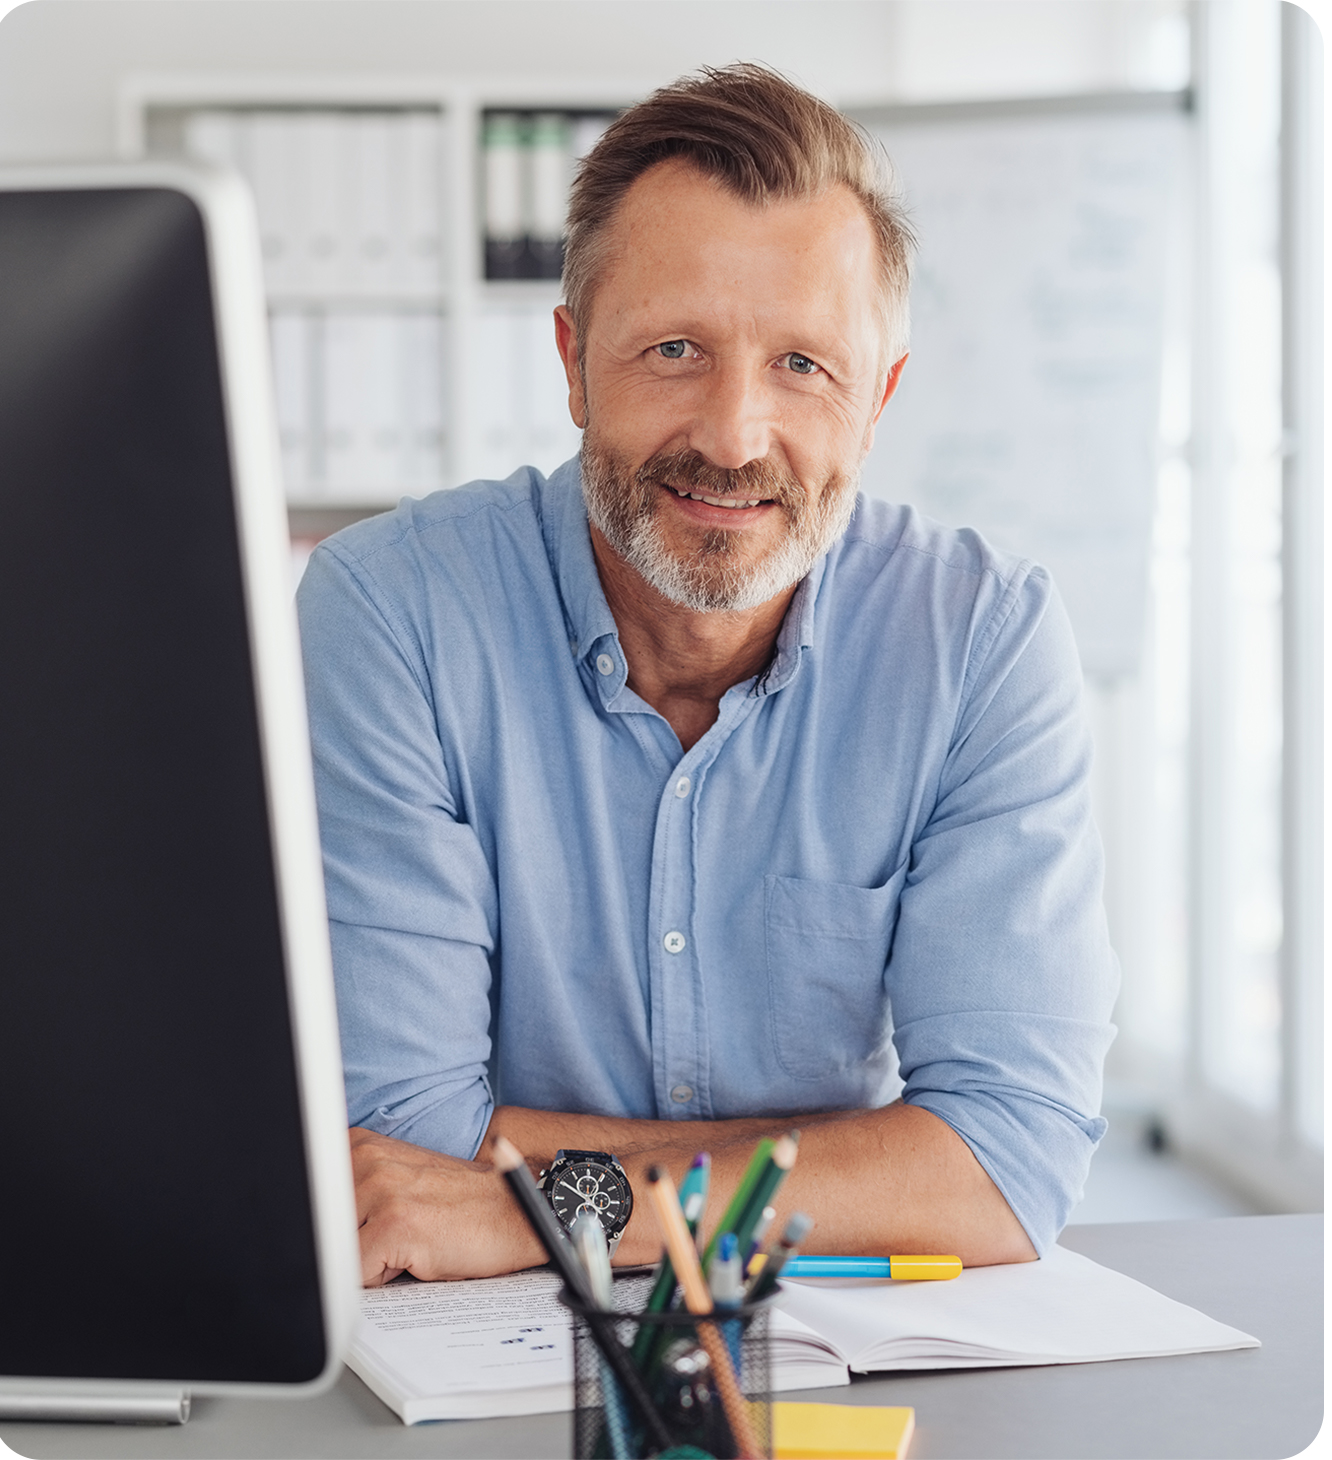 older online male teacher smiling in front of a desktop